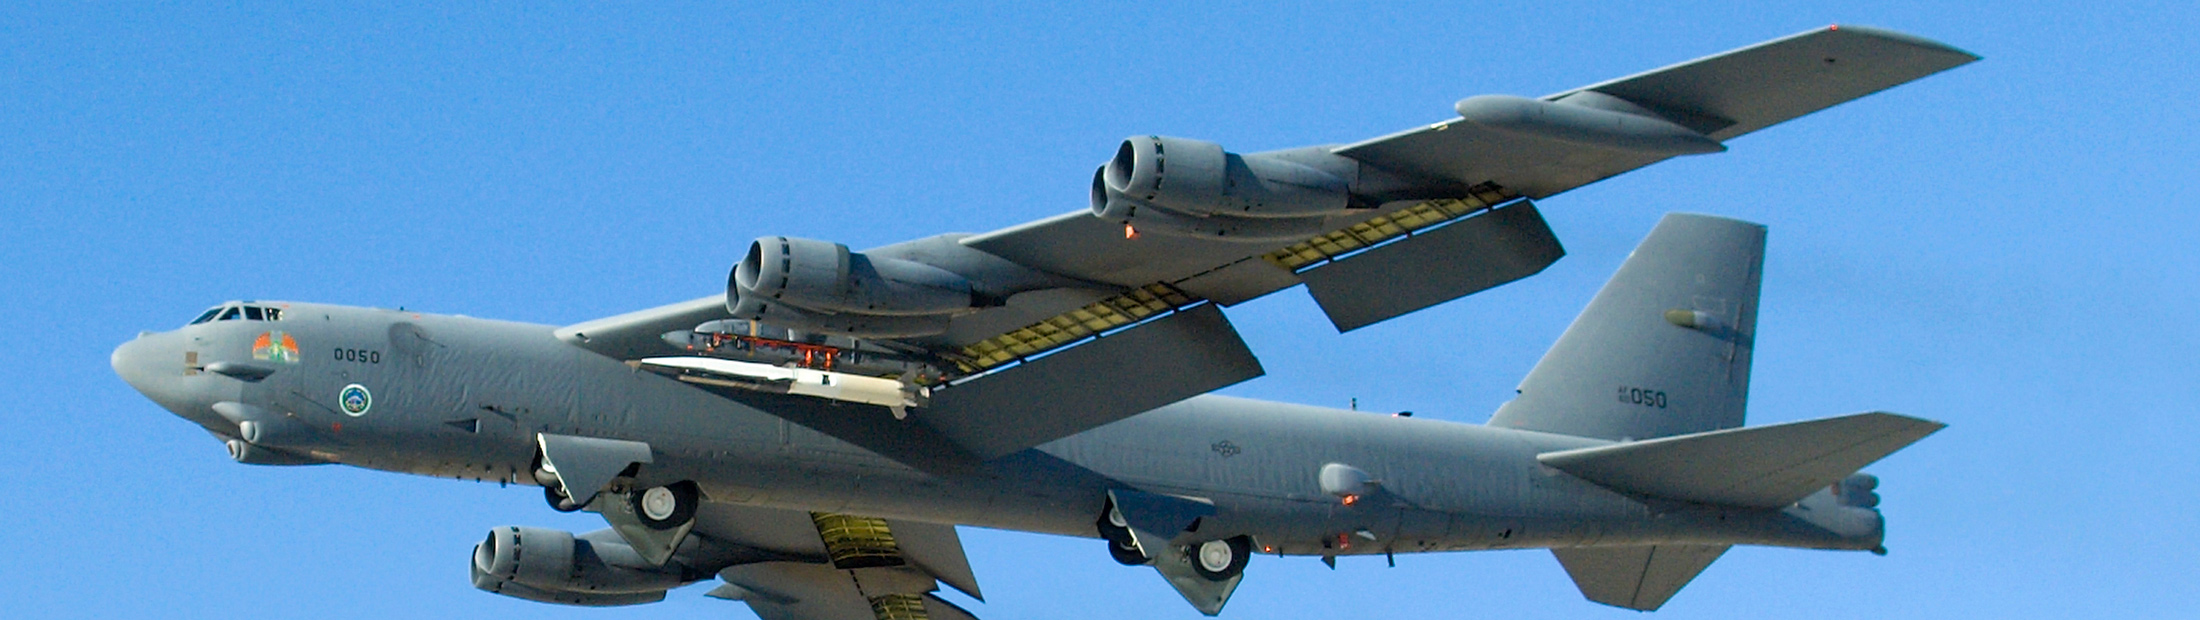 An X-51A Waverider plane